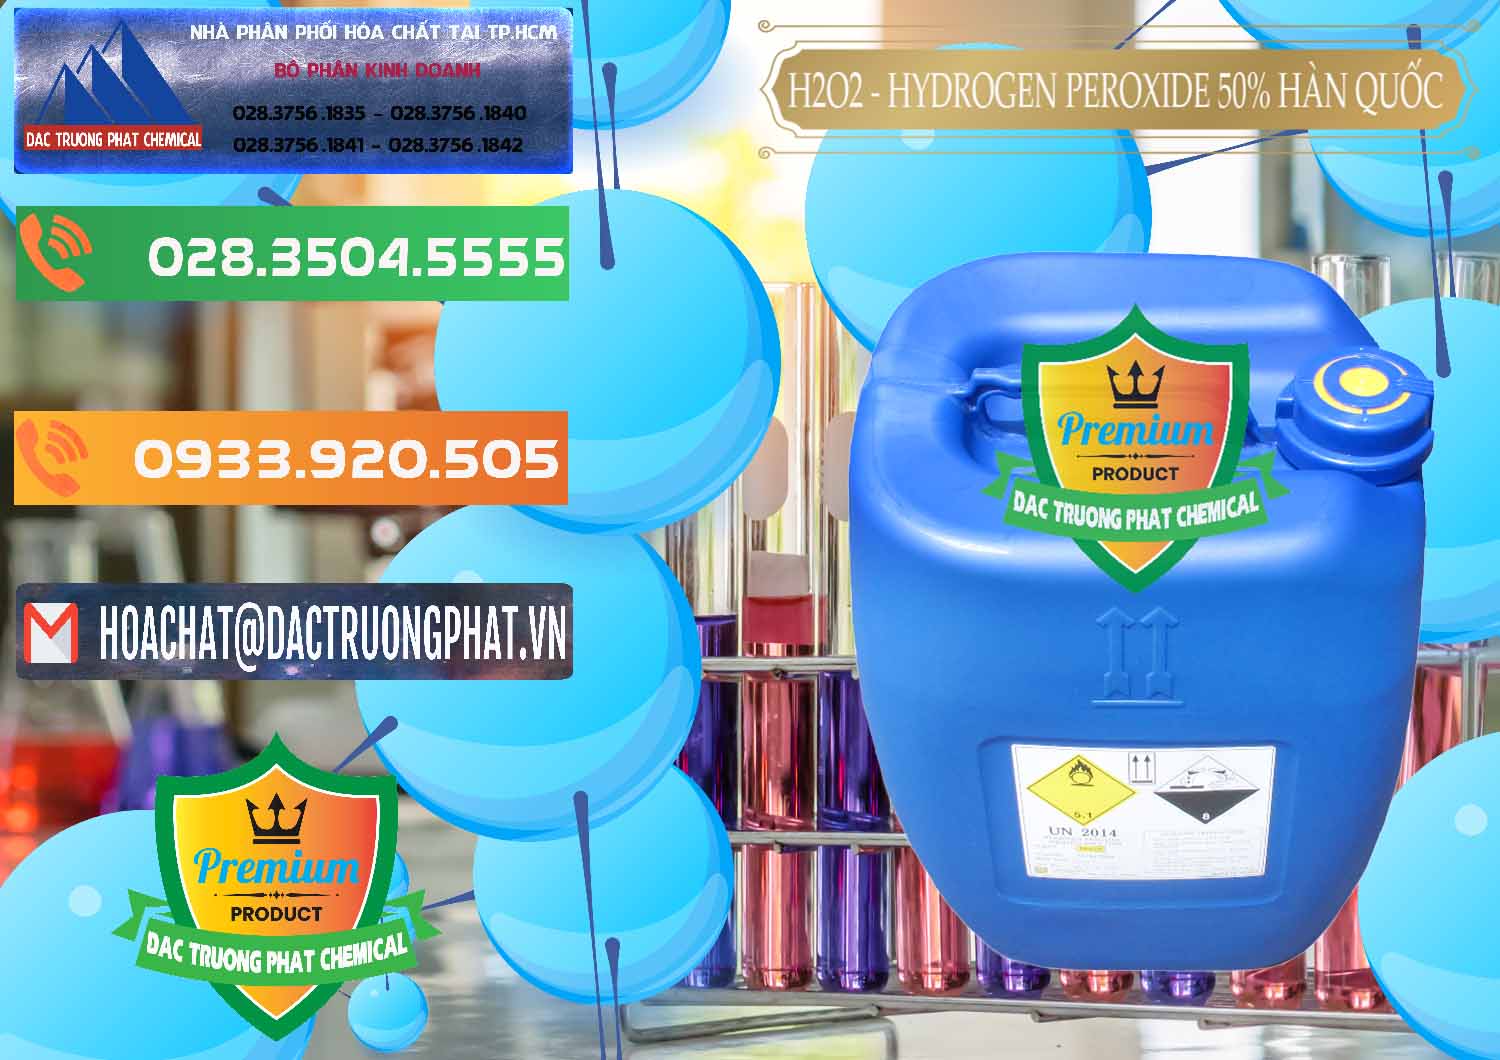 Cty chuyên kinh doanh & bán H2O2 - Hydrogen Peroxide 50% Taekwang Hàn Quốc Korea - 0071 - Đơn vị chuyên nhập khẩu & phân phối hóa chất tại TP.HCM - hoachatxulynuoc.com.vn